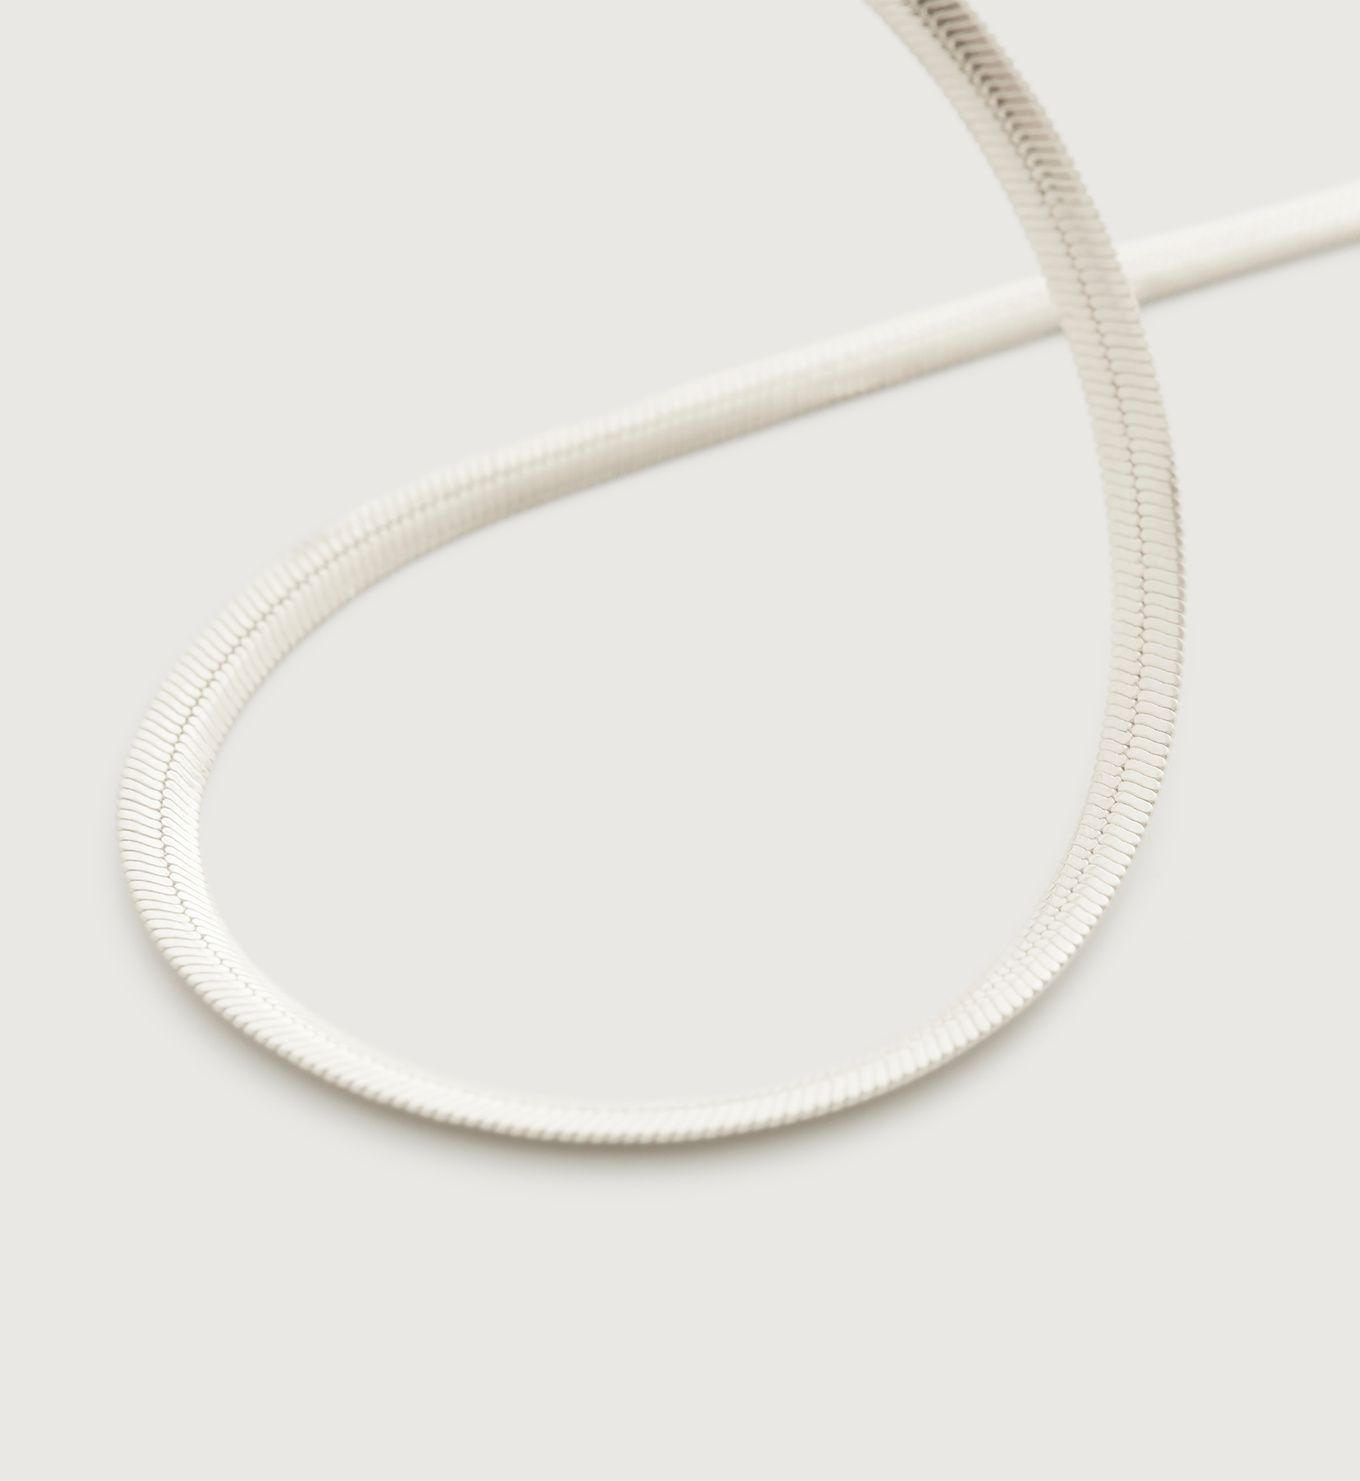 Snake Chain Necklace 46cm/18' | Monica Vinader (Global)